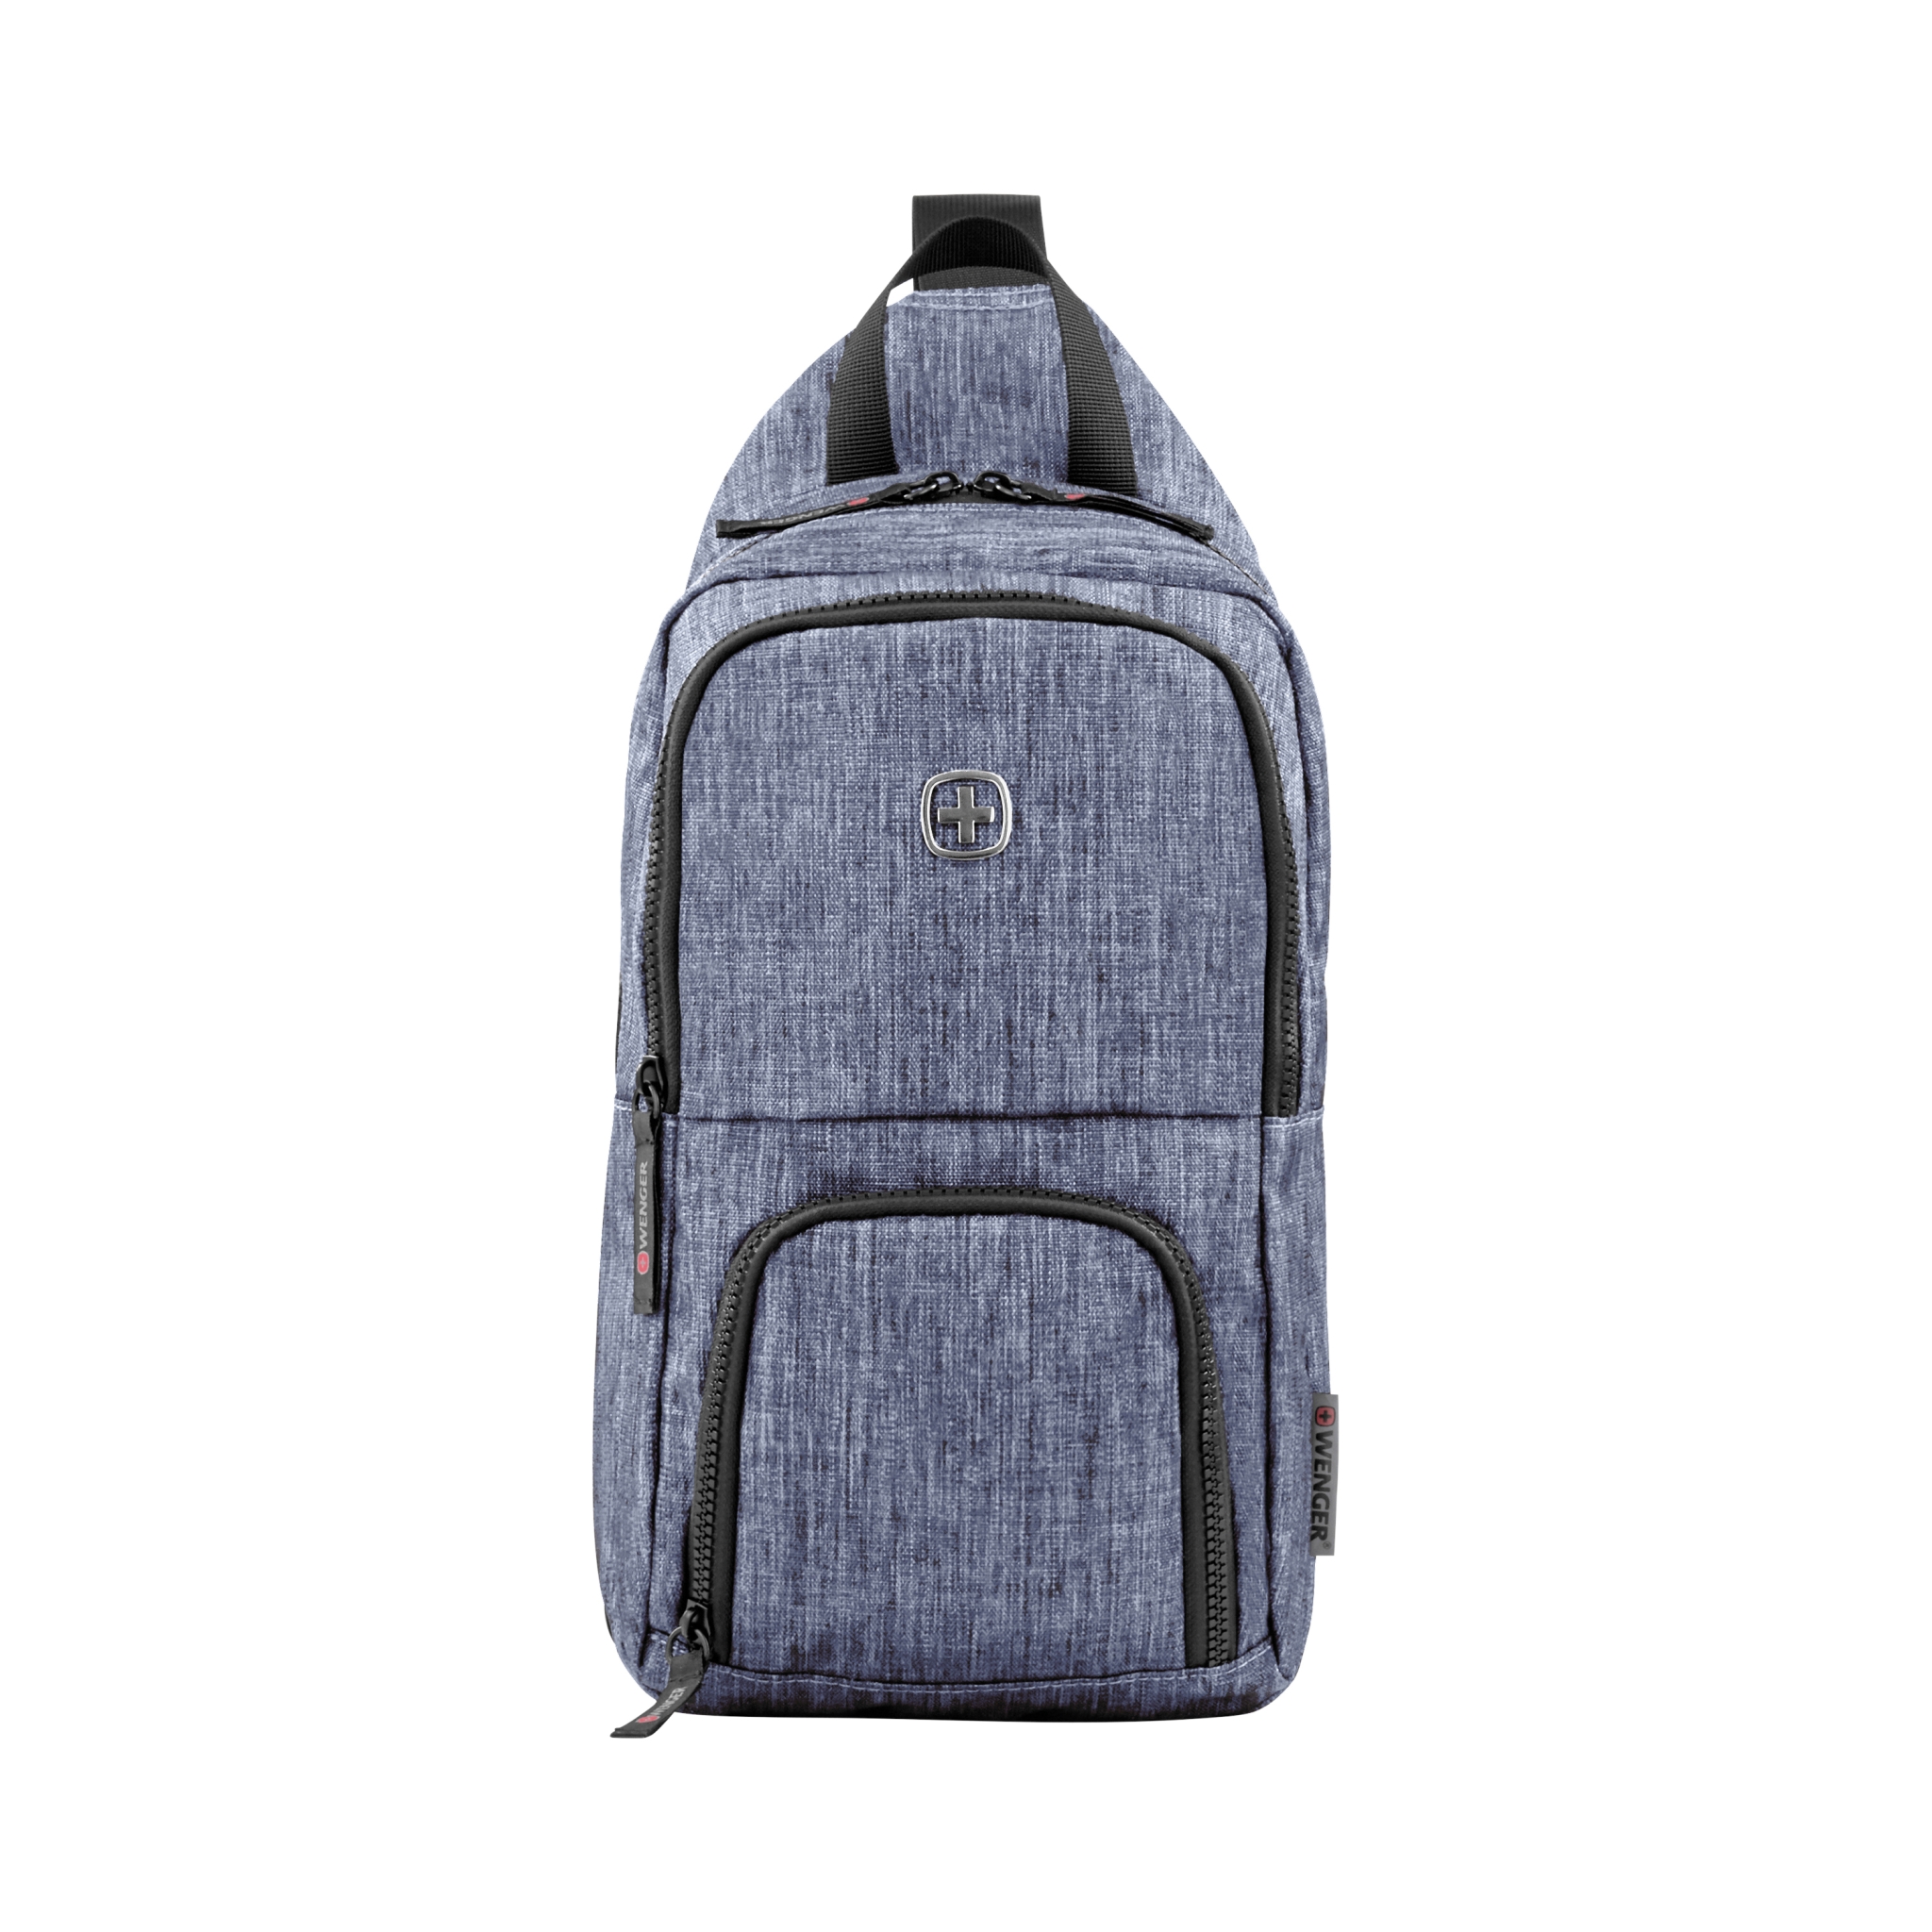 Рюкзак WENGER с одним плечевым ремнем, синий, полиэстер, 19 х 12 х 33 см, 8 л, синий